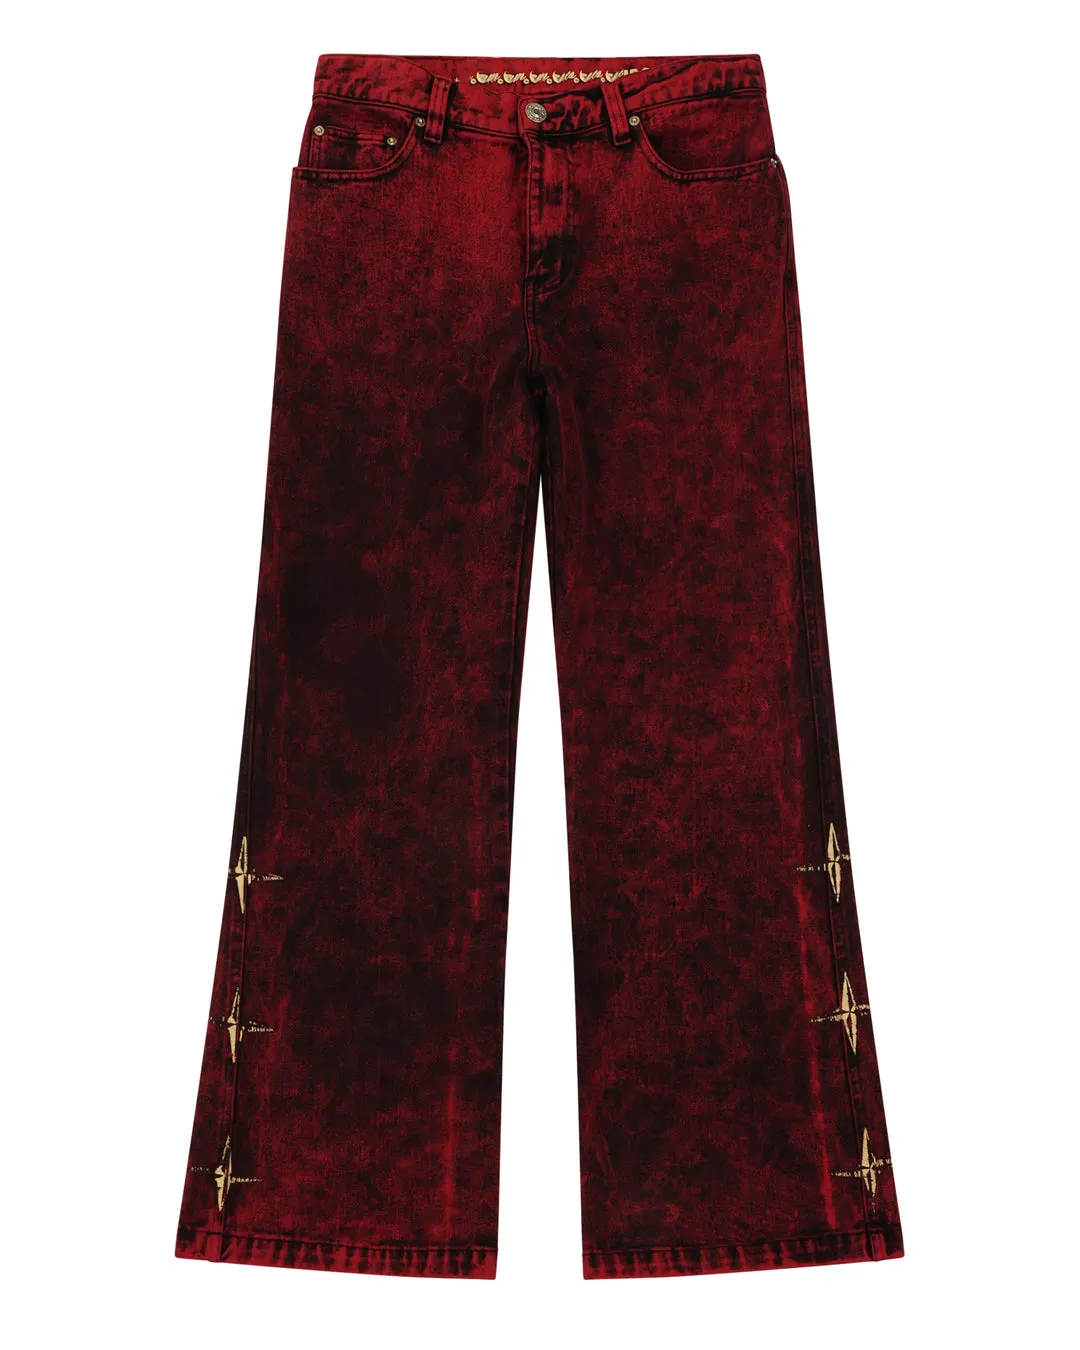 Özel üçlü yıldız siyah yangın Lava erkek alevlendi kot boyalı çift marangoz kargo pantolon Patchwork Vintage Flare kot